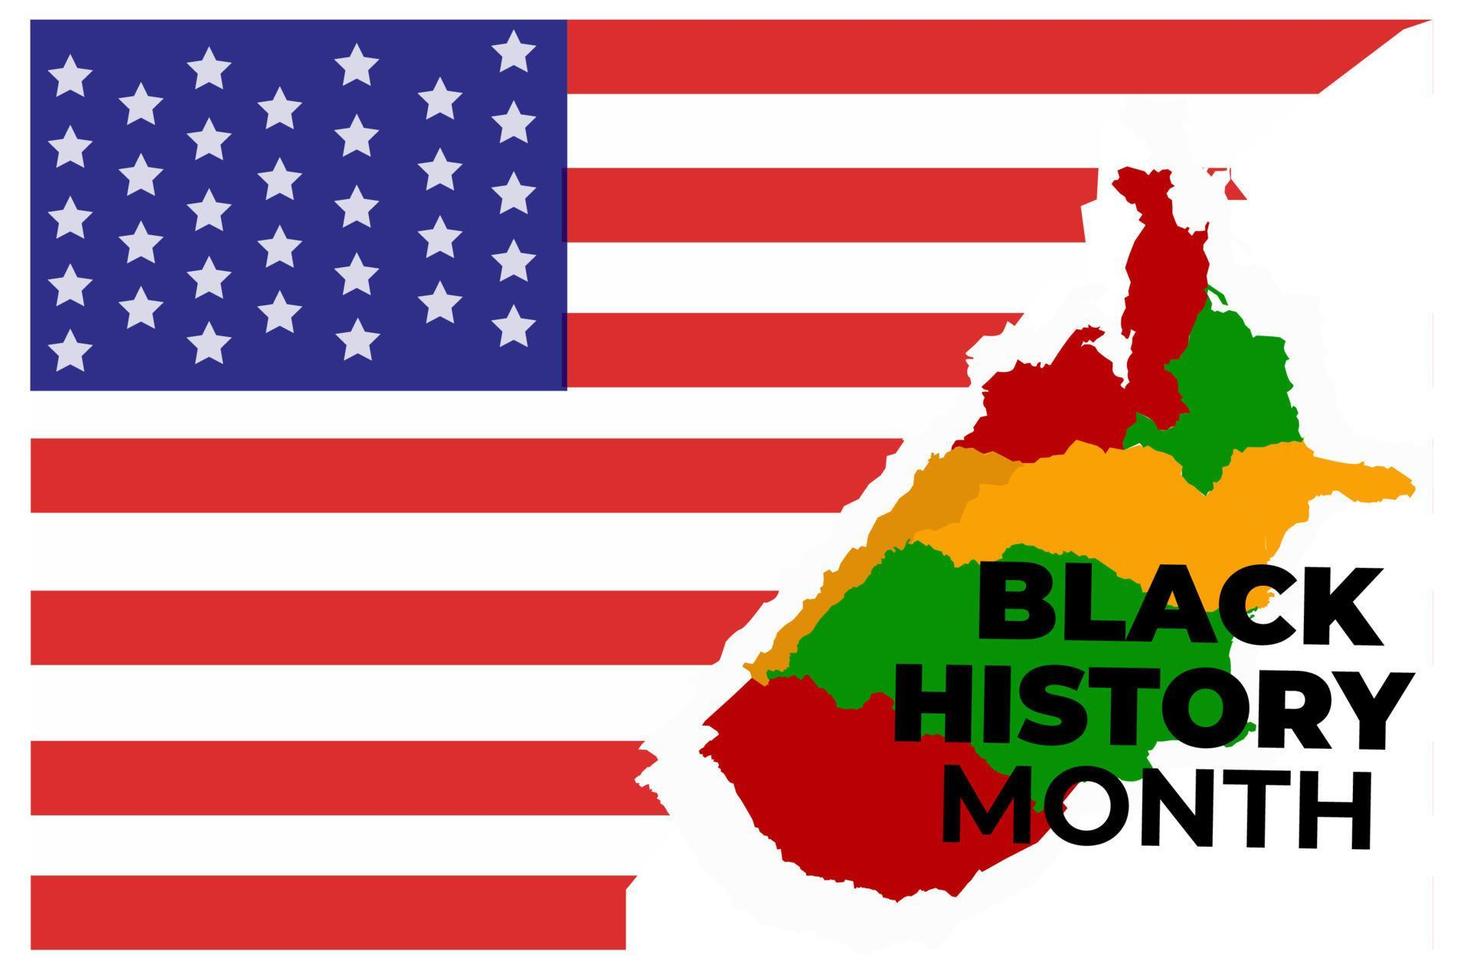 le uni États' historique anniversaire est commémorer noir histoire mois. noir histoire mois est un annuel fête de le fête de africain les Américains et une temps à reconnaître leur central vecteur